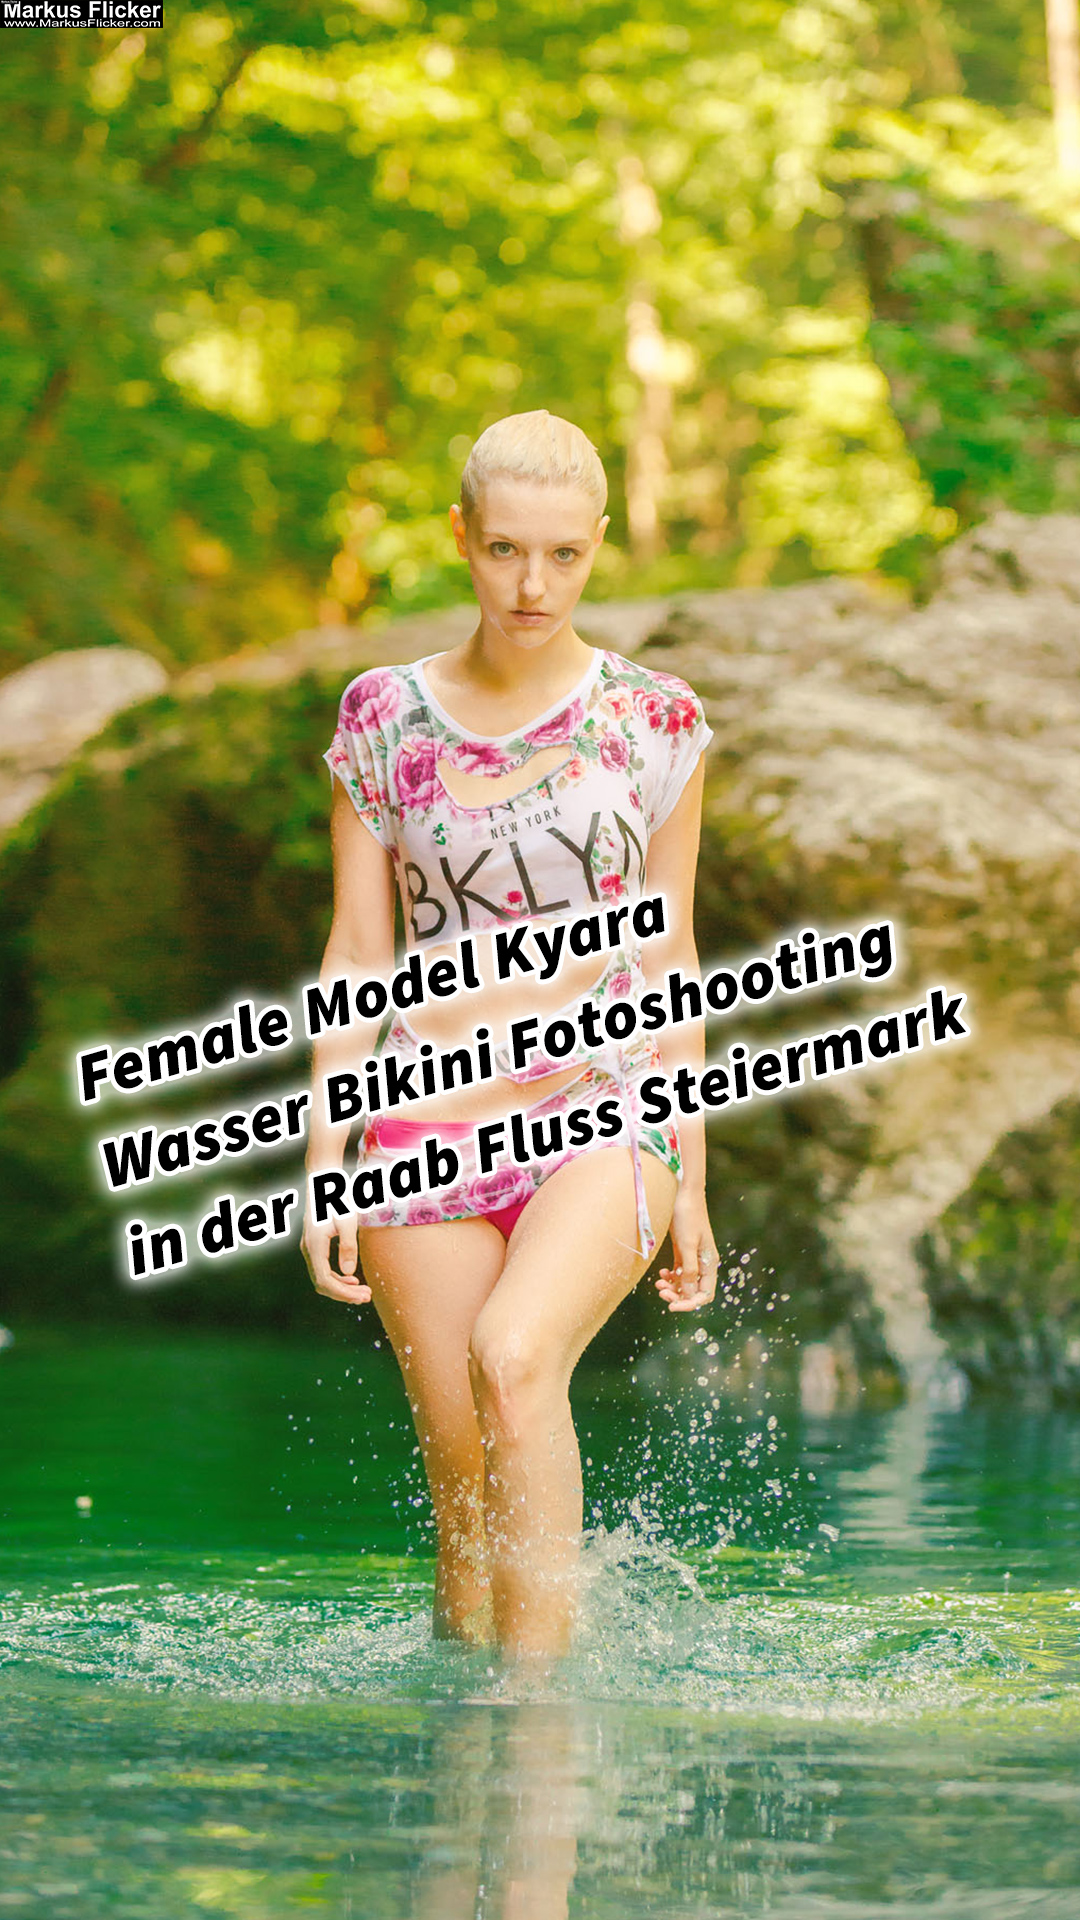 Female Model Kyara Wasser Outdoor Bikini Fotoshooting in der Raab Fluss Steiermark Raabklamm Wet-T-Shirt inkl. 20 Tipps für Foto und Video